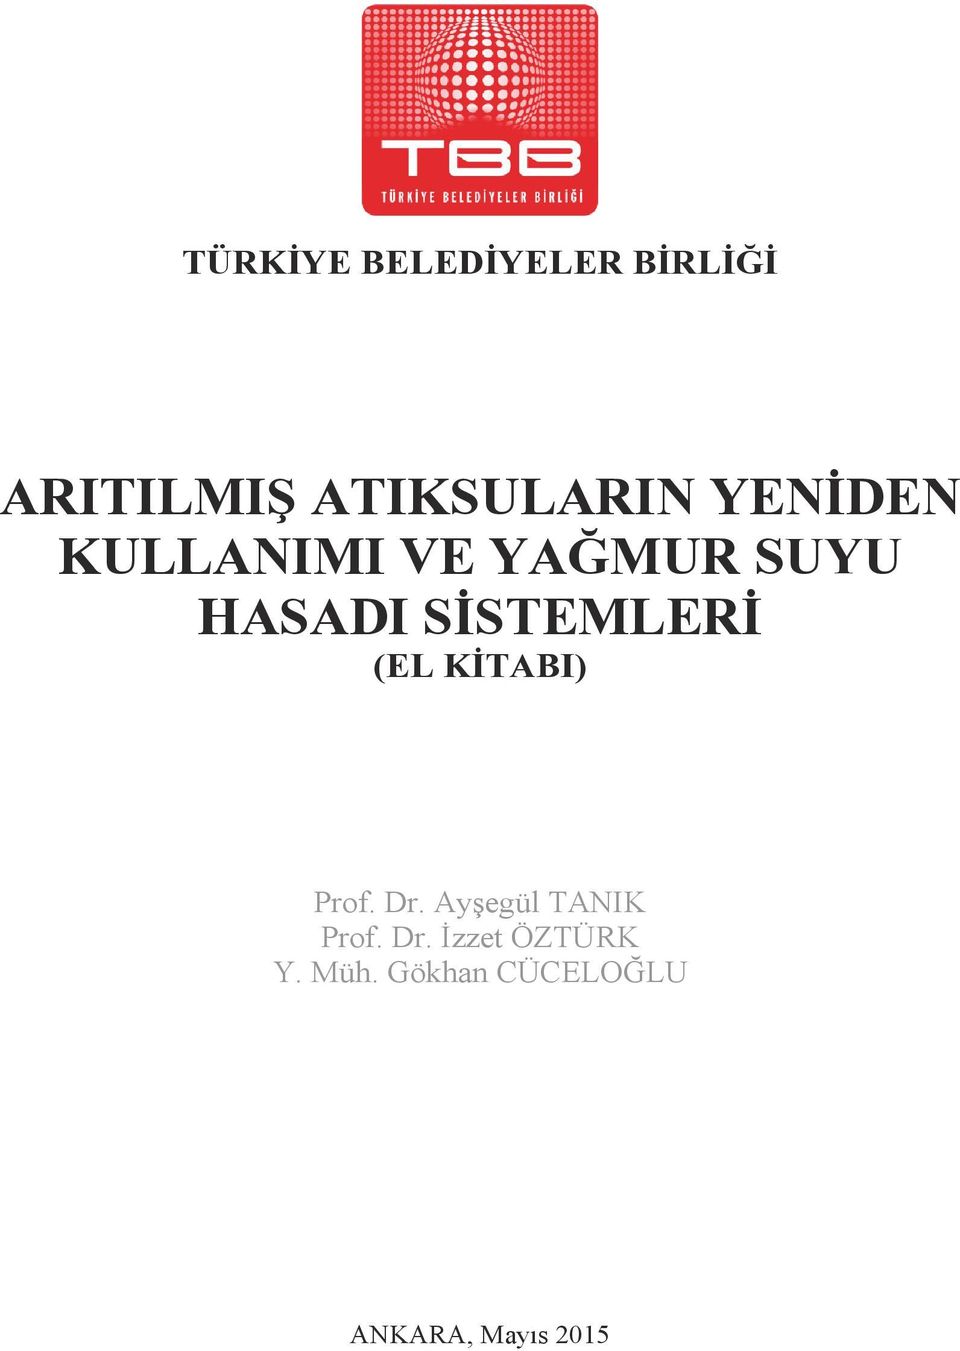 (EL KİTABI) Prof. Dr. Ayşegül TANIK Prof. Dr. İzzet ÖZTÜRK Y.